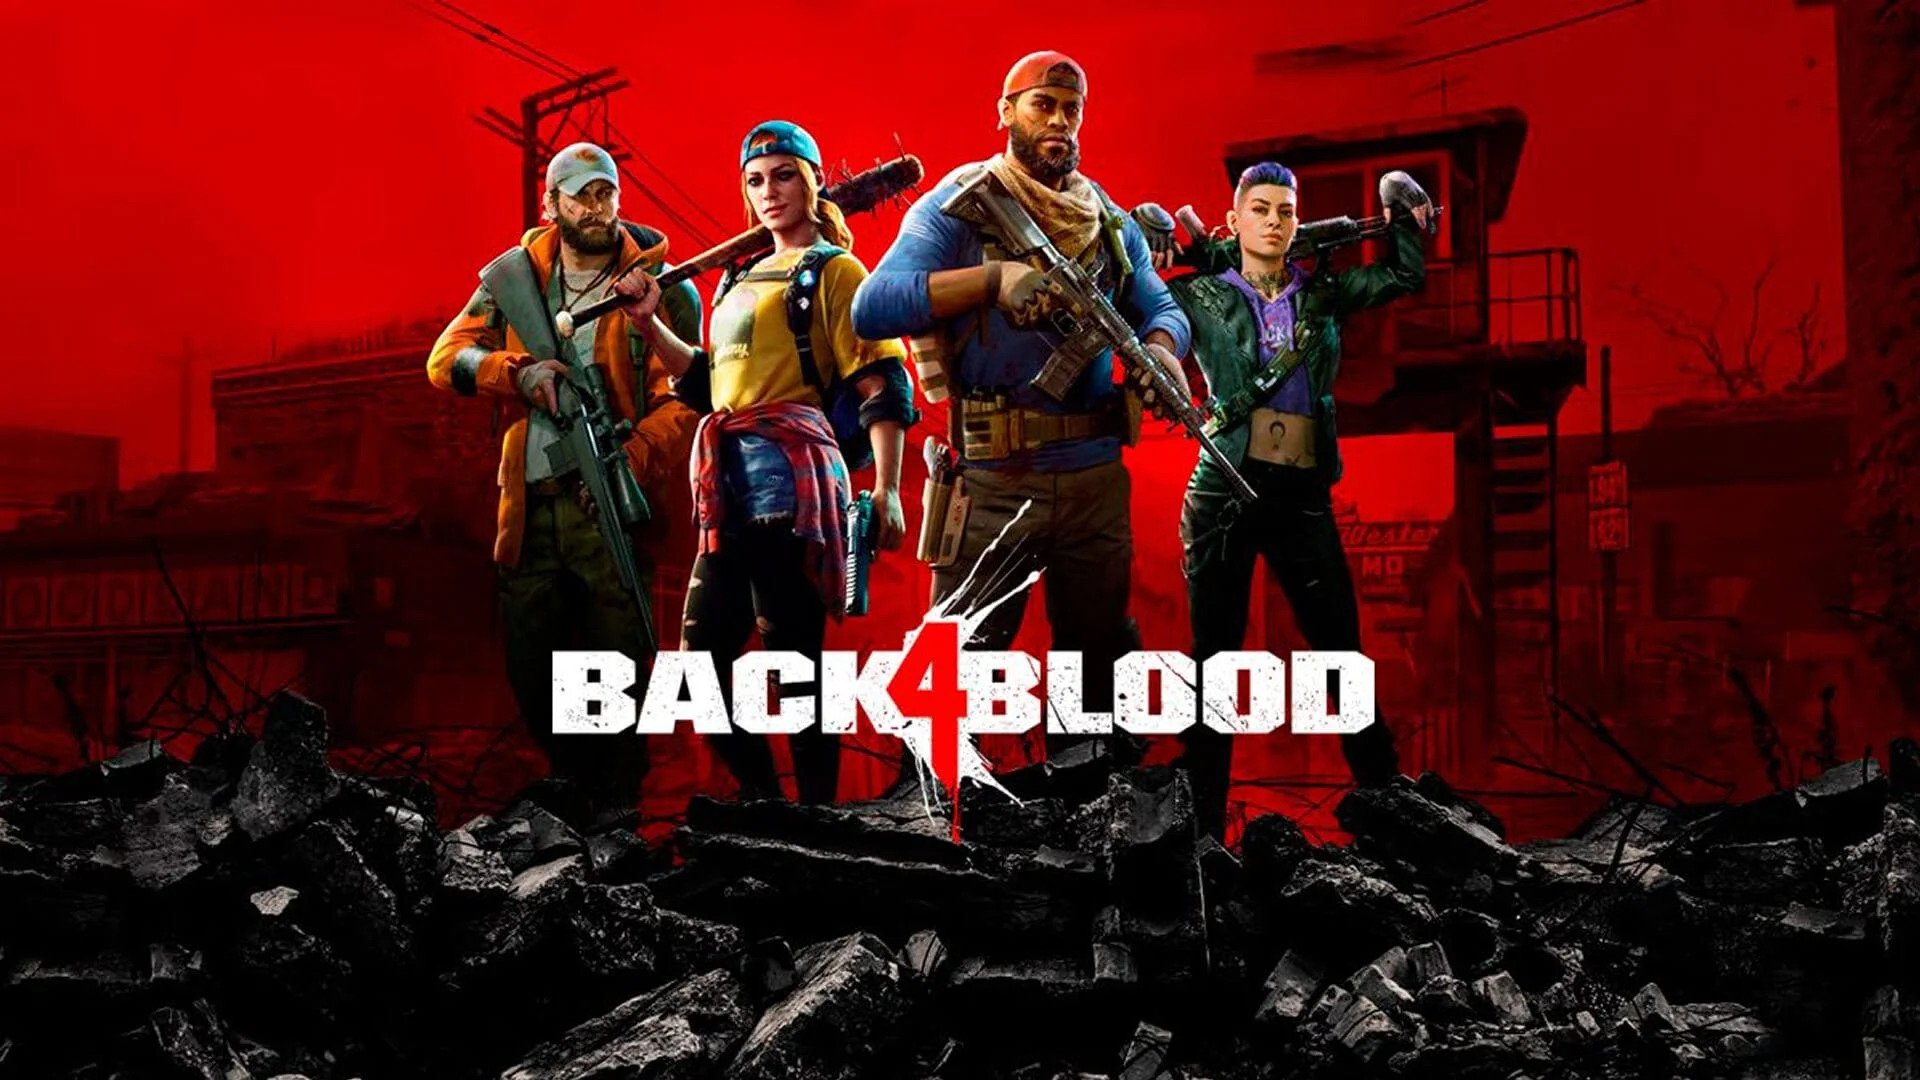 BACK 4 BLOOD Official Trailer (2021)